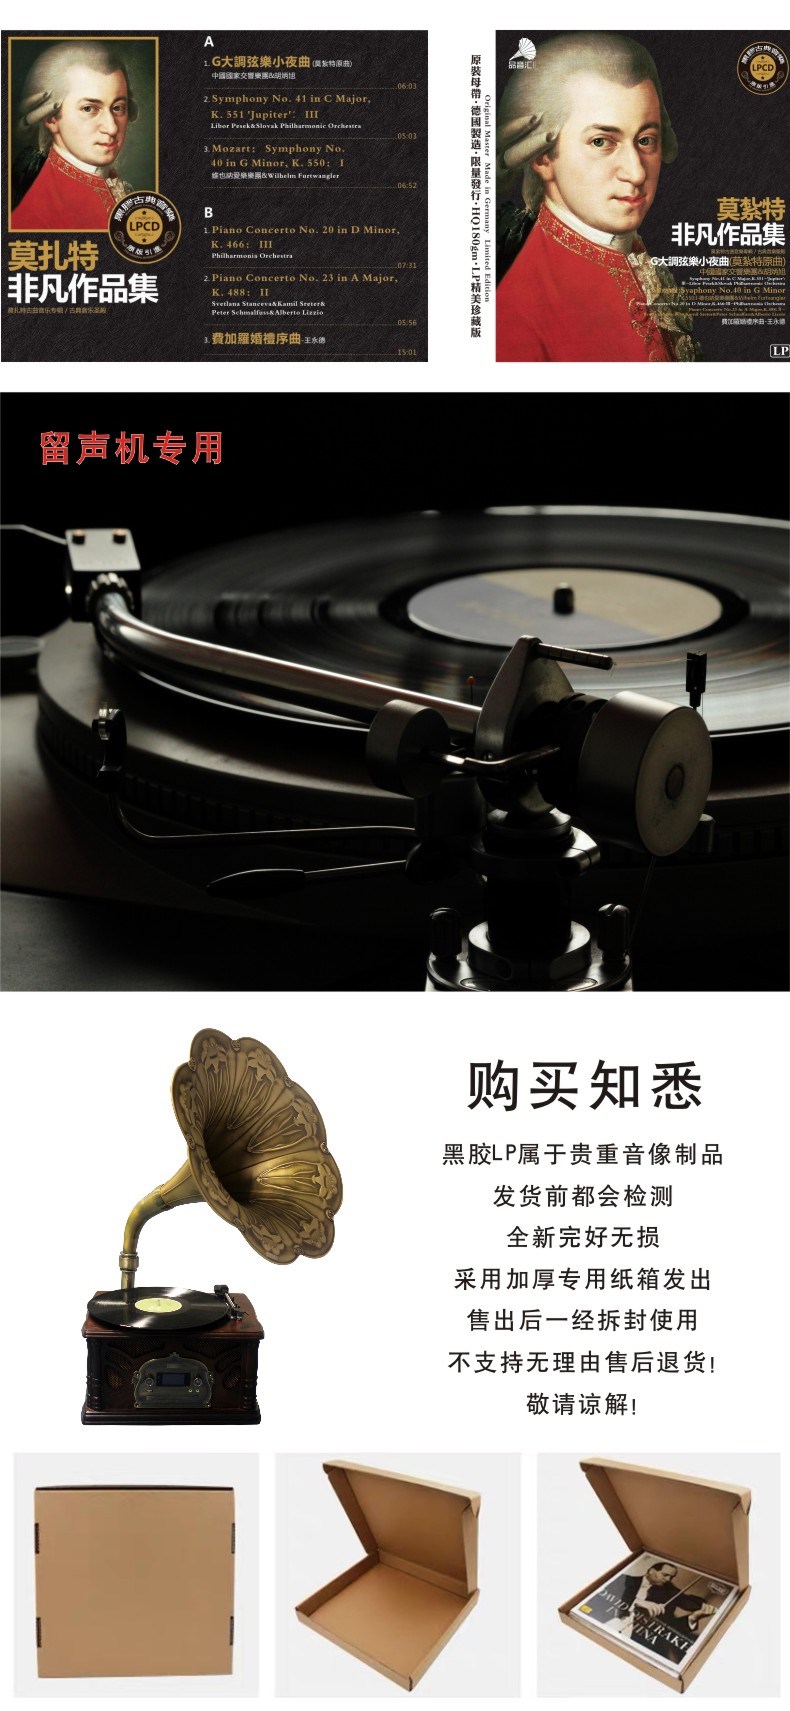 Mozart cao cấp Alan Tam Chopin Zhang Mingmin lp đĩa quay đĩa hát đĩa vinyl album 12 - Máy hát